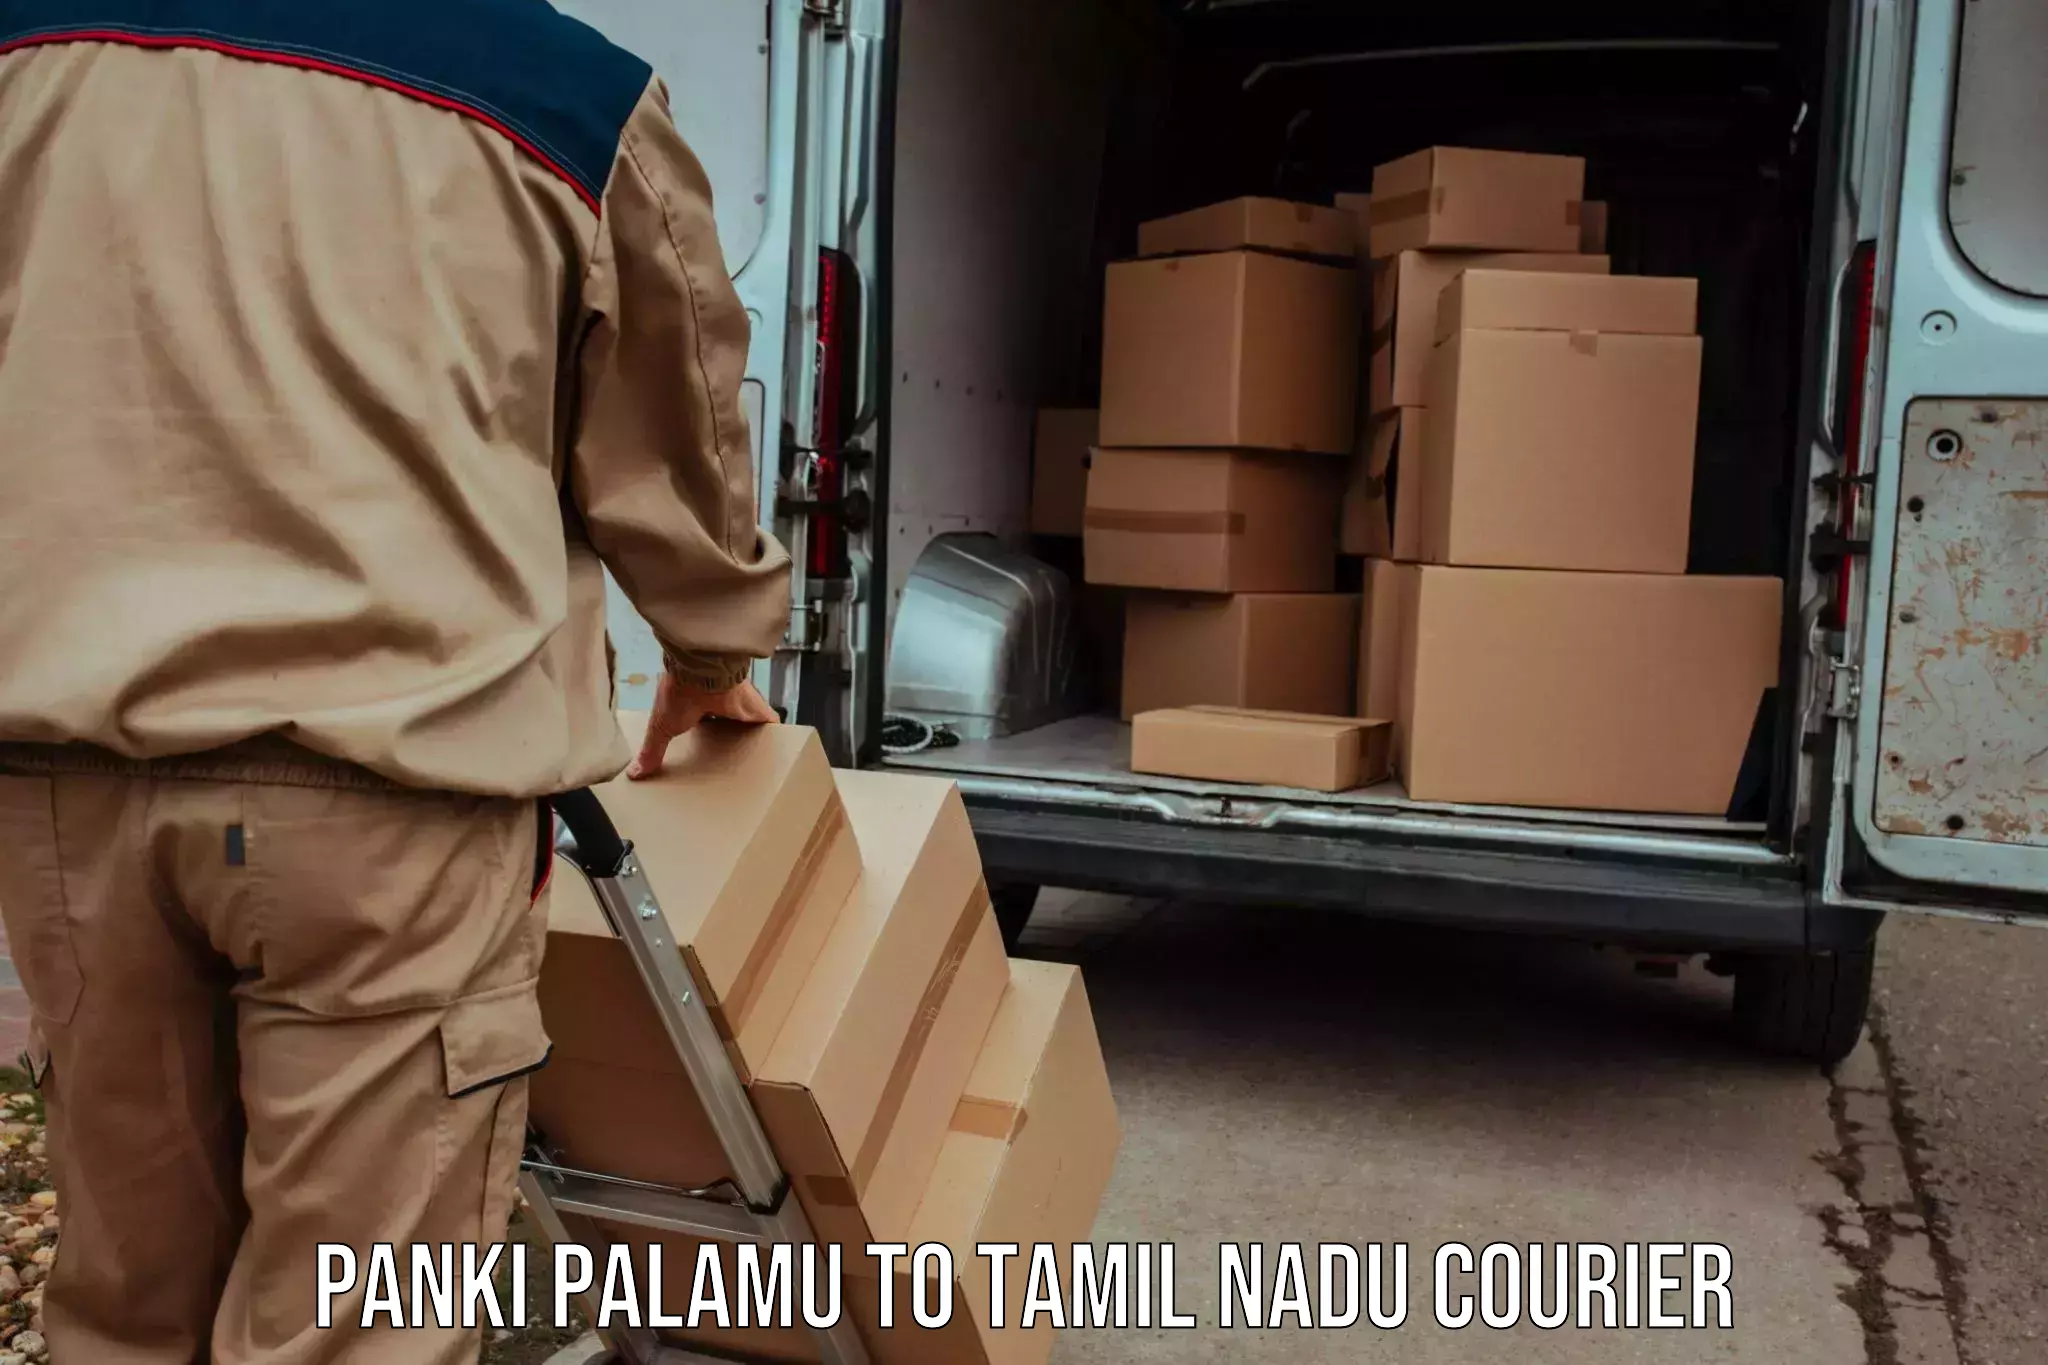 User-friendly delivery service Panki Palamu to Musiri